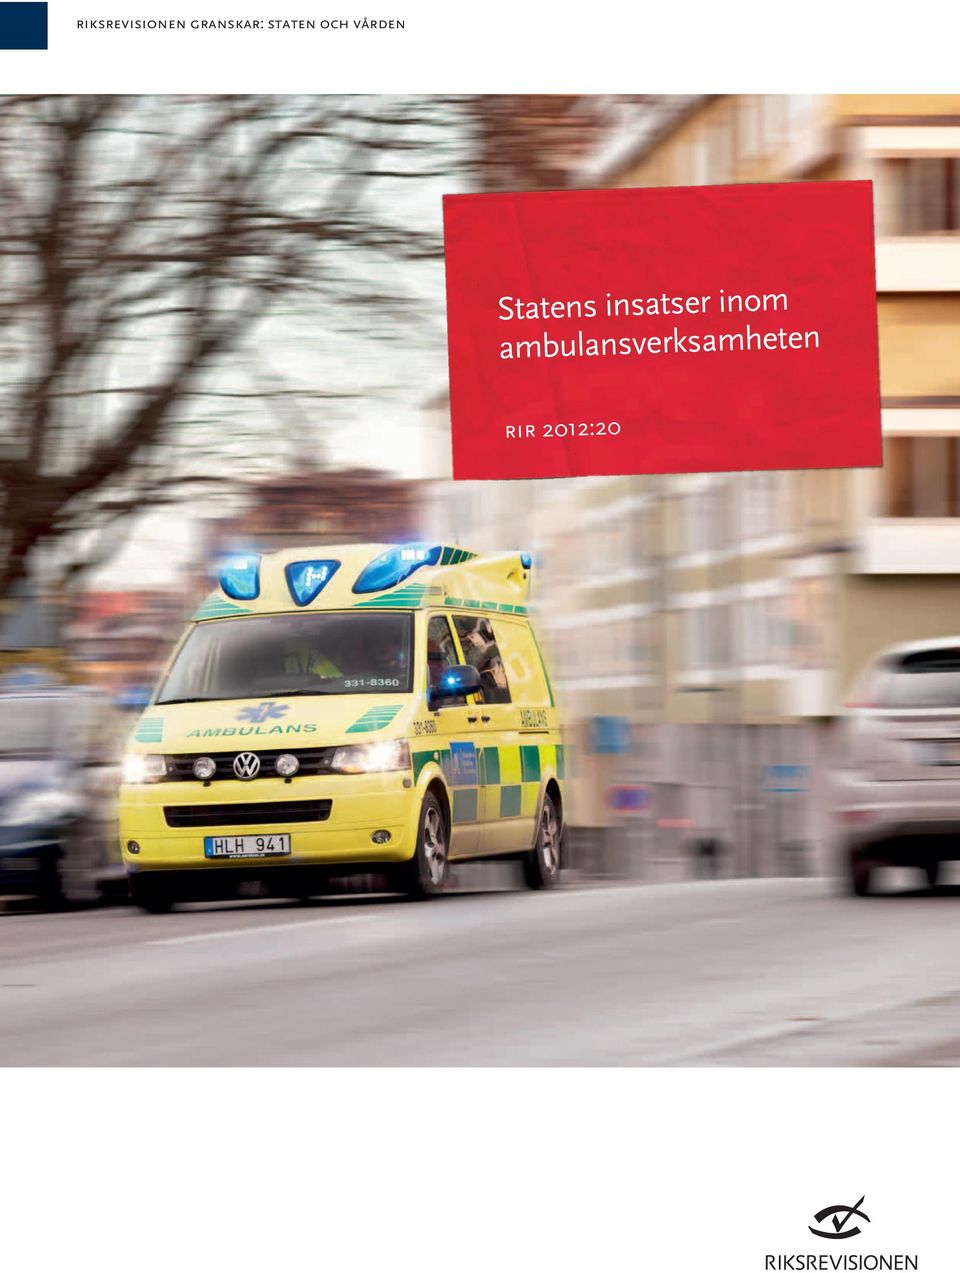 ambulansverksamheten rir 2012:20